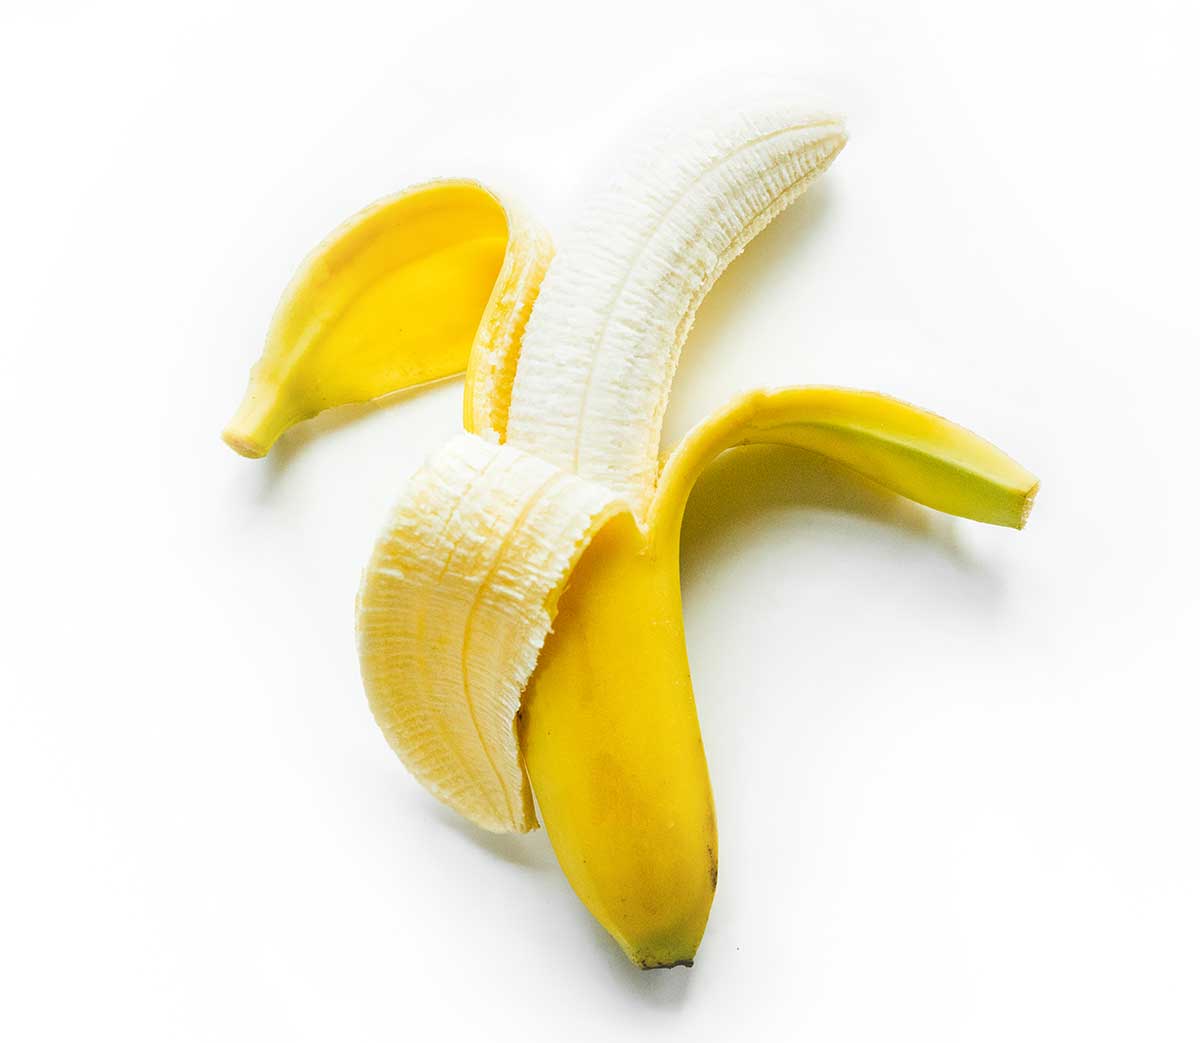 Half peeled banana on white background